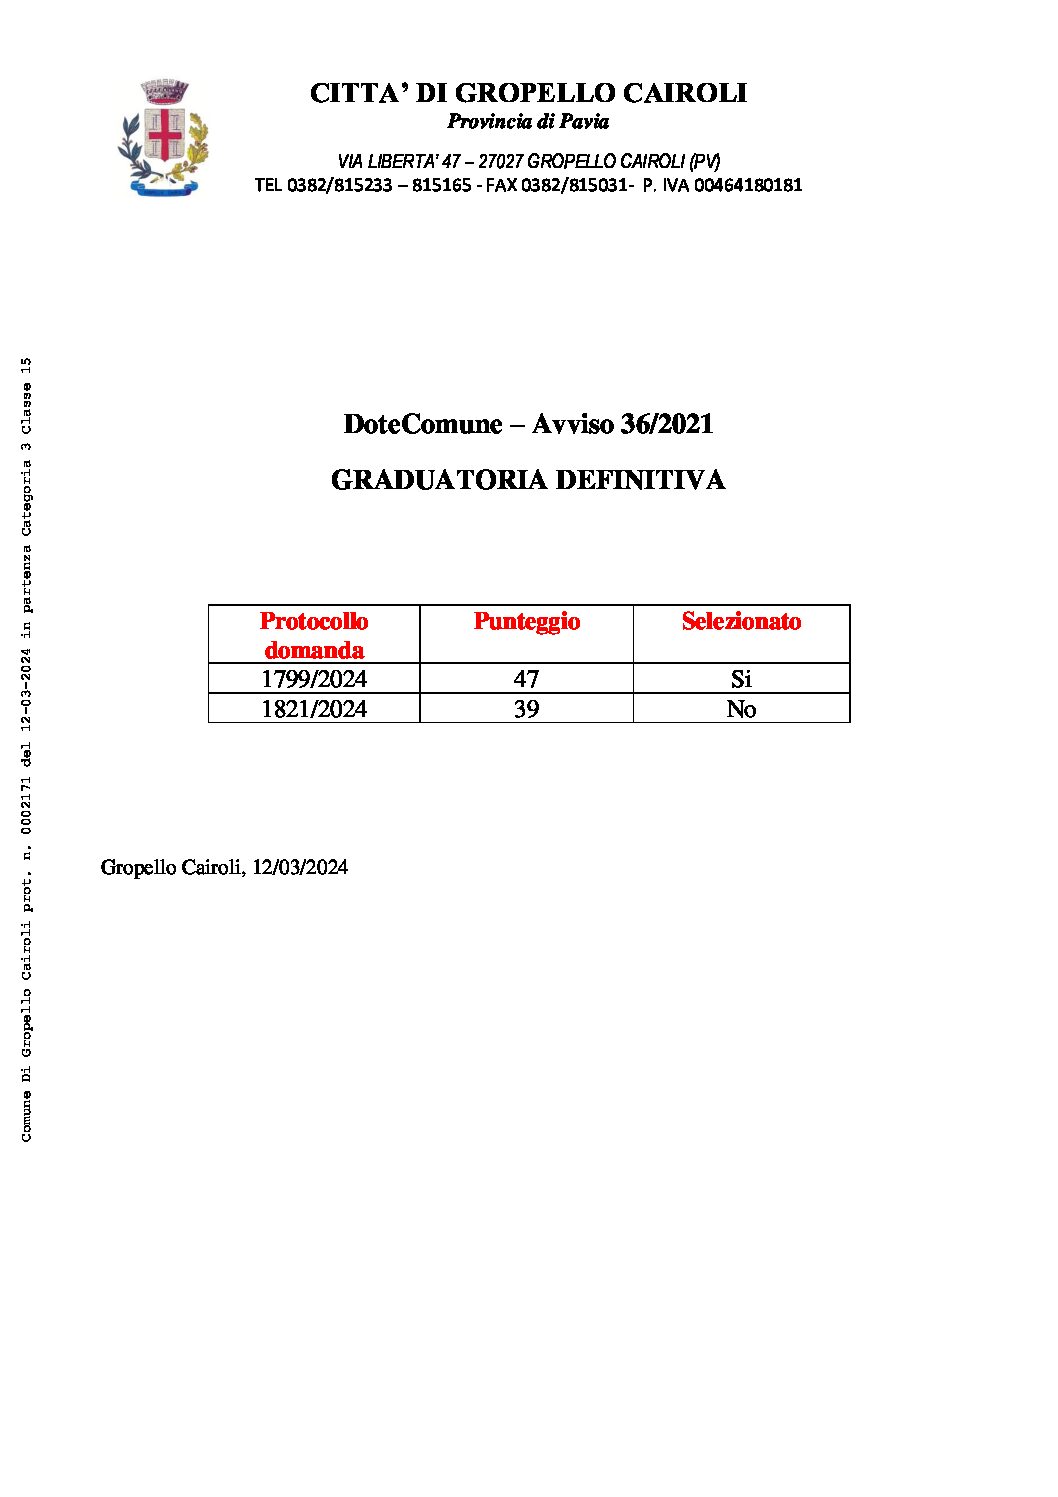 GRADUATORIA DEFINITIVA SELEZIONE DOTECOMUNE AVVISO 36/2021 – AVVIO VOLONTARI 26/03/2024.